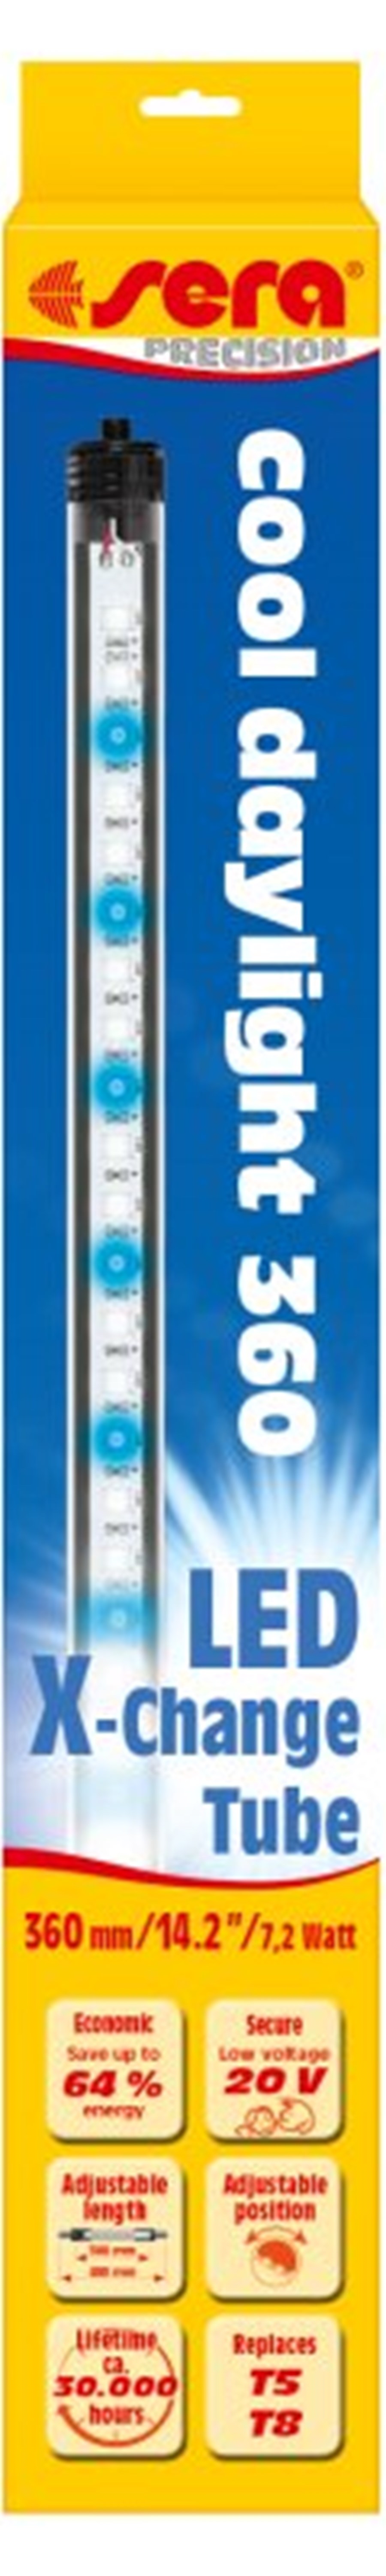 sera LED cool daylight 520 mm / 12 W